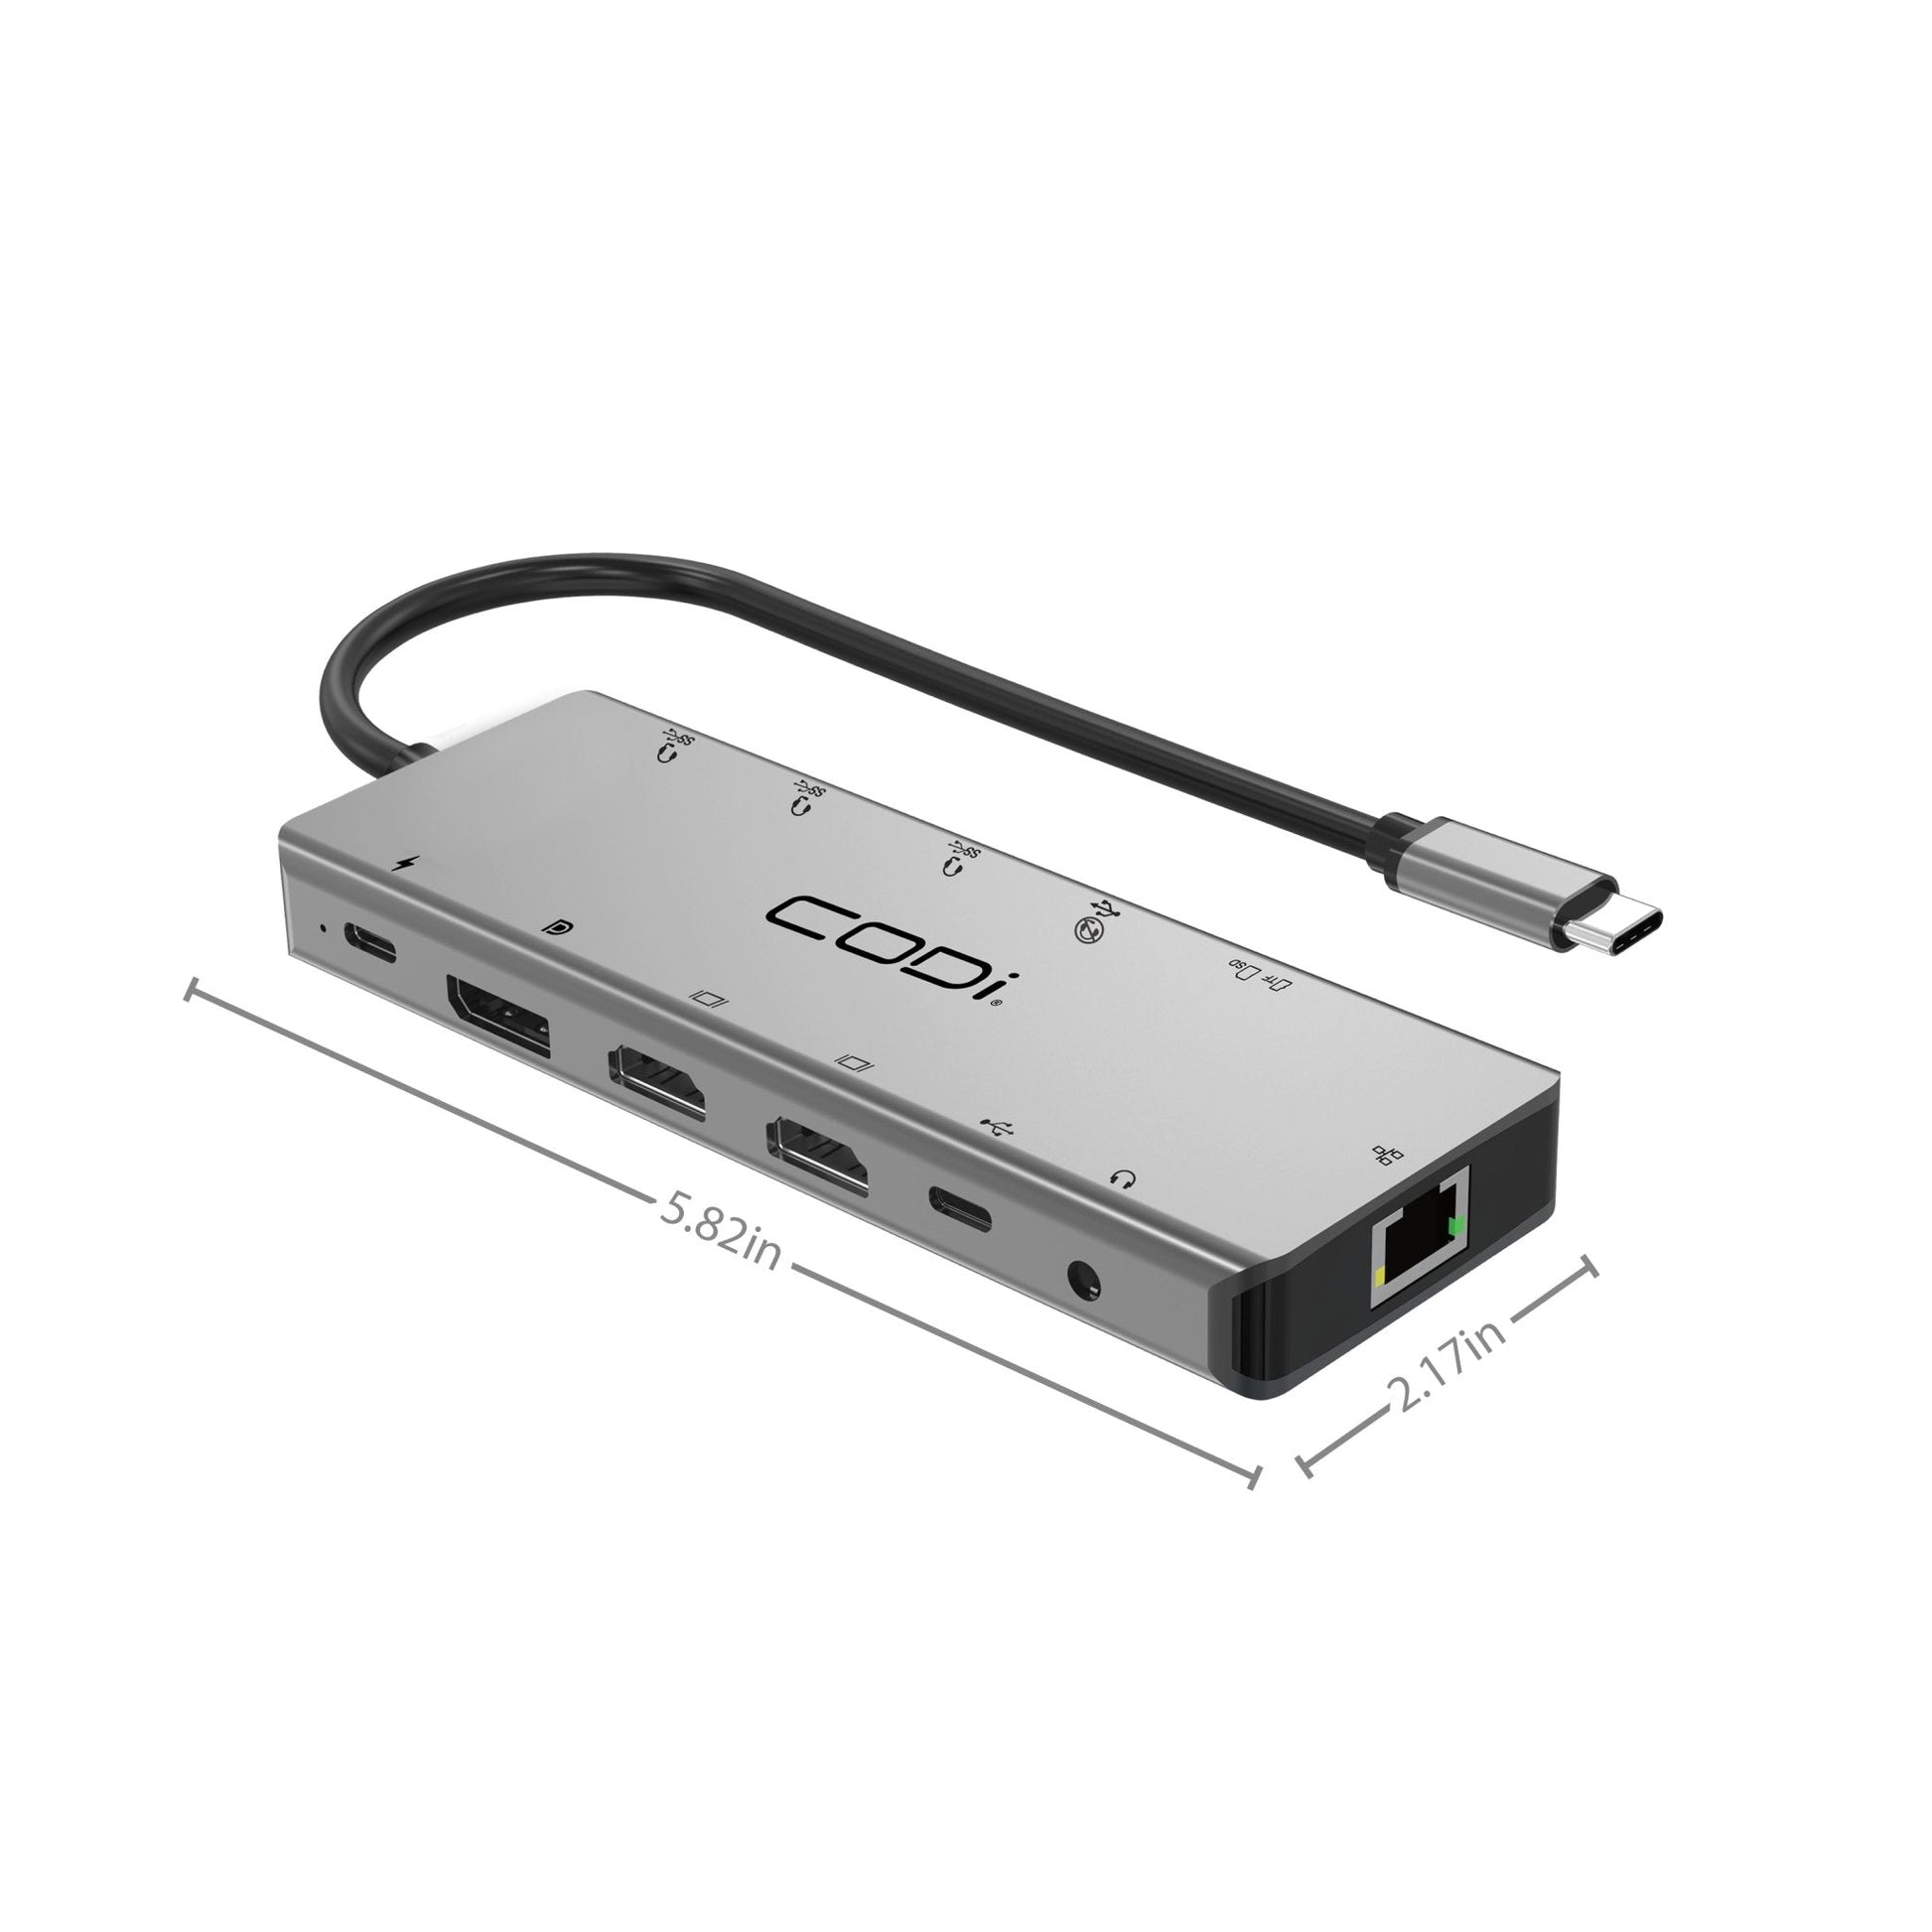 13-in-1 USB-C Multi-Port Hub